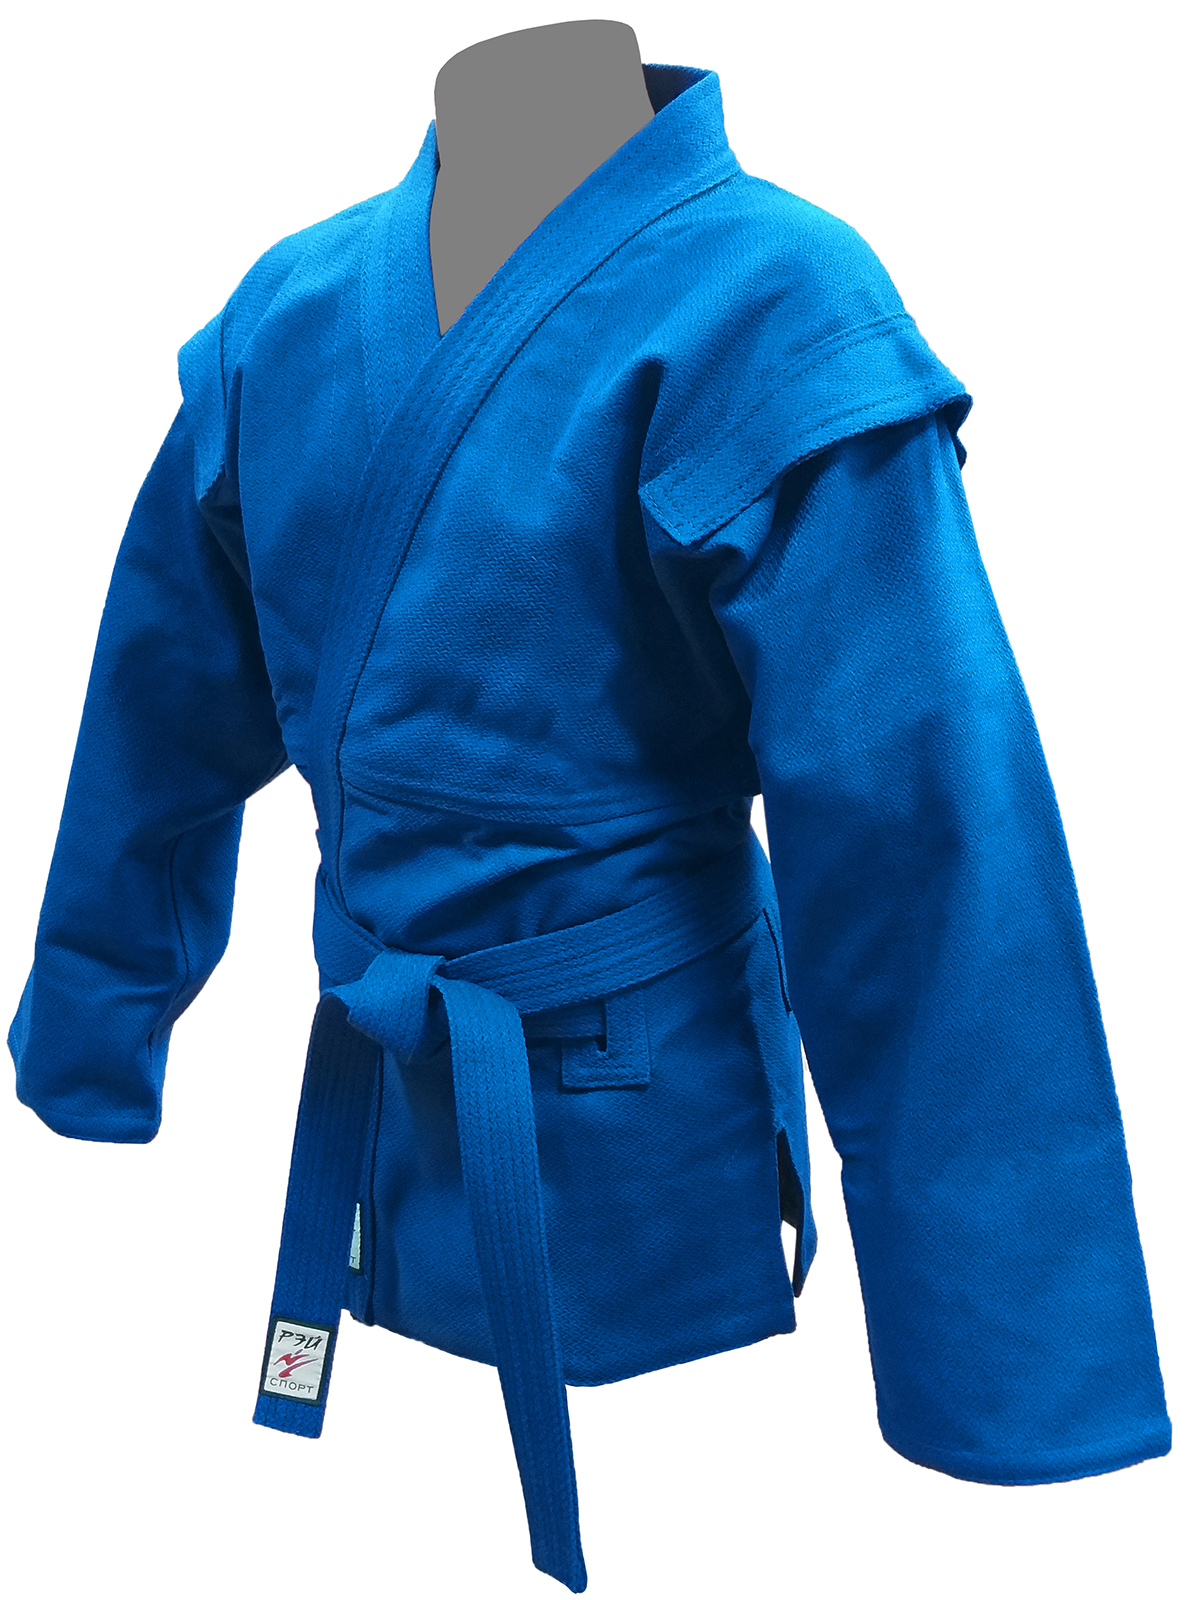 Куртка РЭЙ-СПОРТ для Самбо, 175-50, синяя